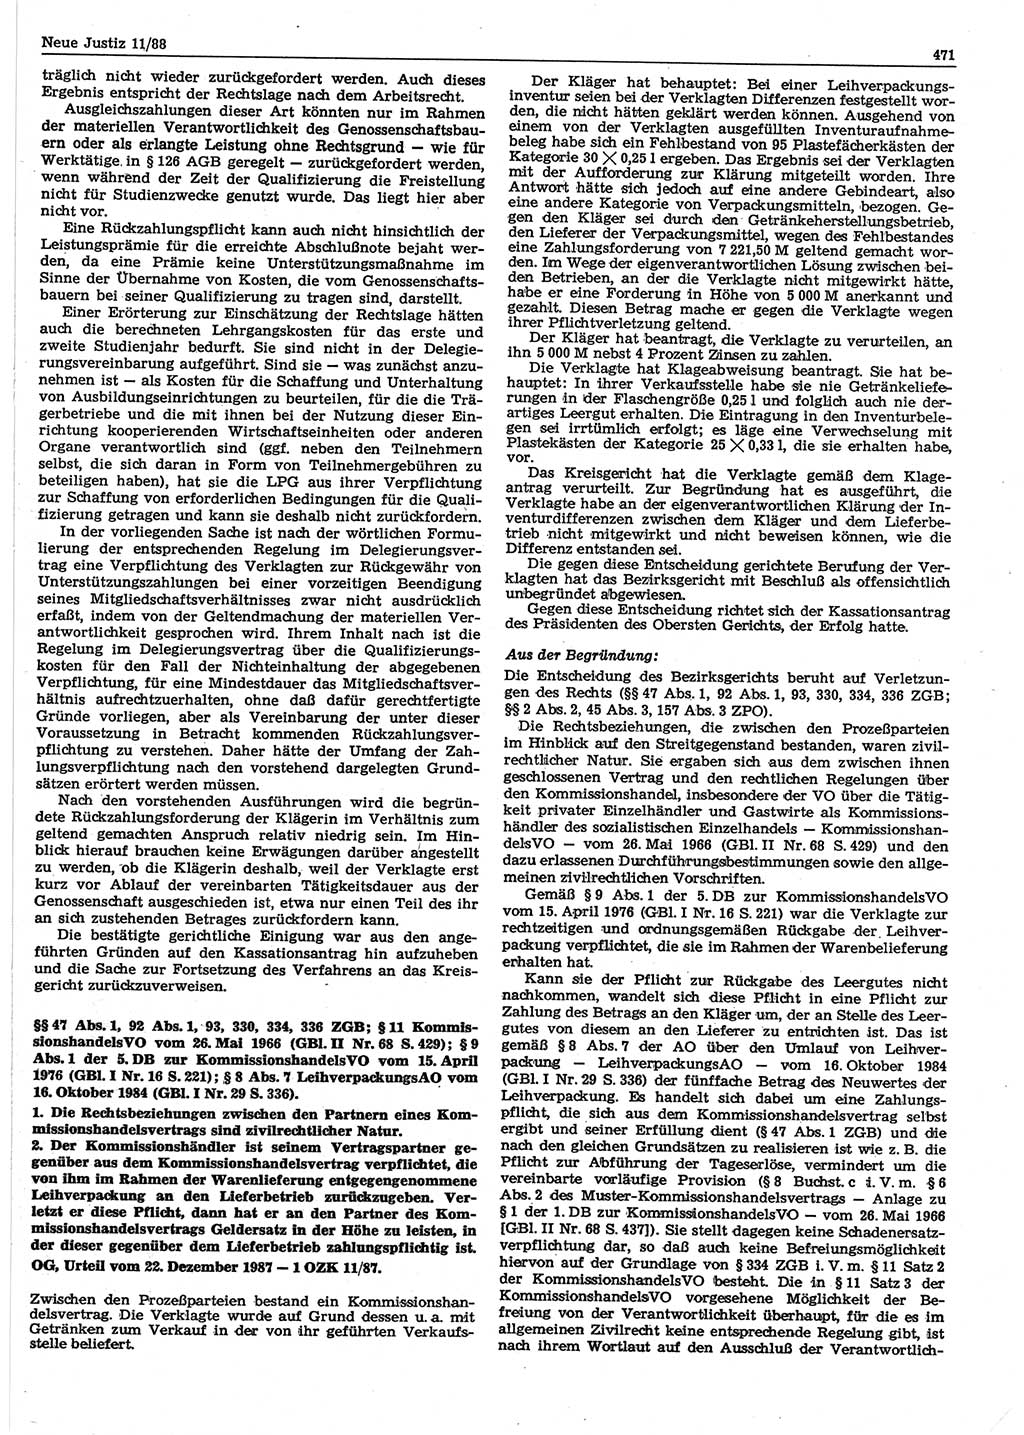 Neue Justiz (NJ), Zeitschrift für sozialistisches Recht und Gesetzlichkeit [Deutsche Demokratische Republik (DDR)], 42. Jahrgang 1988, Seite 471 (NJ DDR 1988, S. 471)